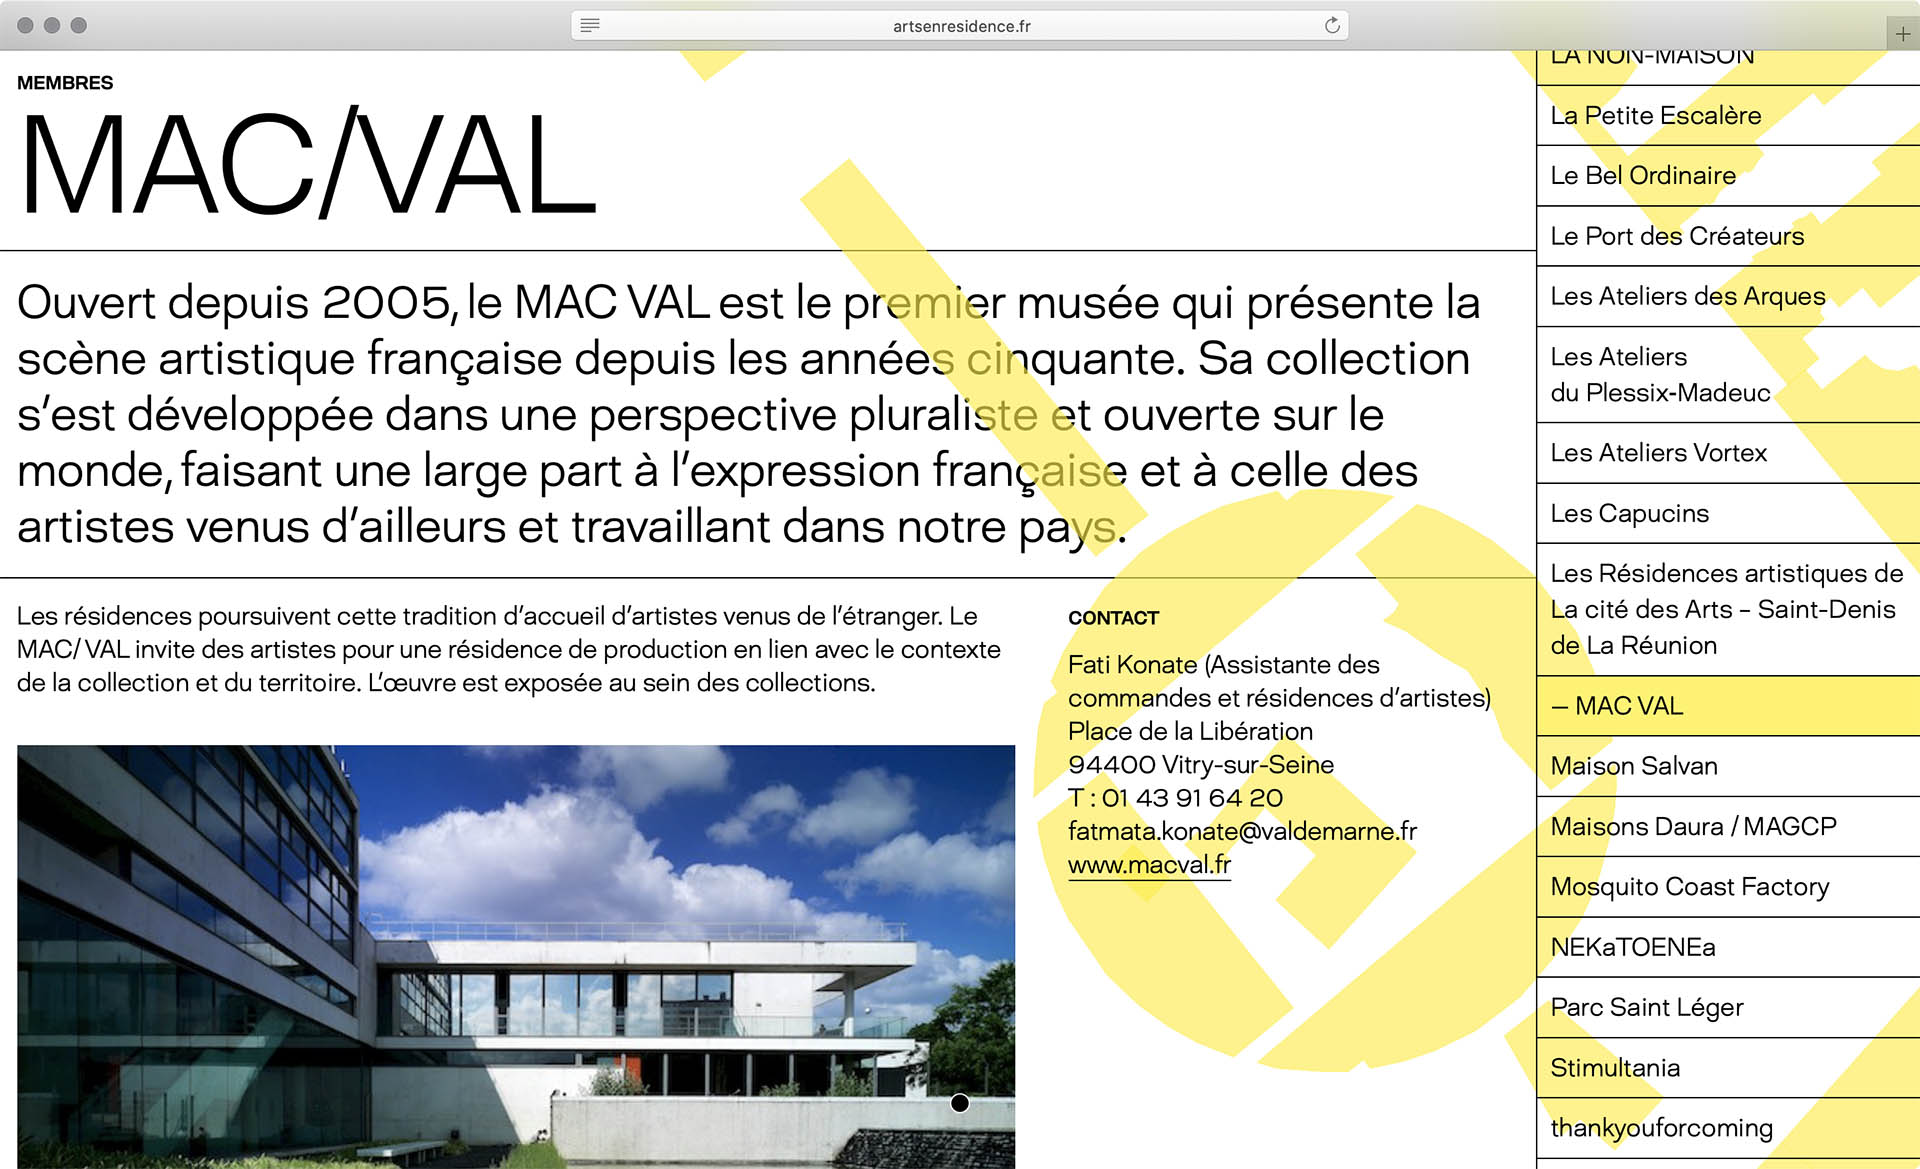 Cyril Makhoul - (link: https://www.artsenresidence.fr/ text: Arts en résidence) — Visual Identity and webdesign (with (link: https://benoitb.studio/ text: Benoit Böhnke))